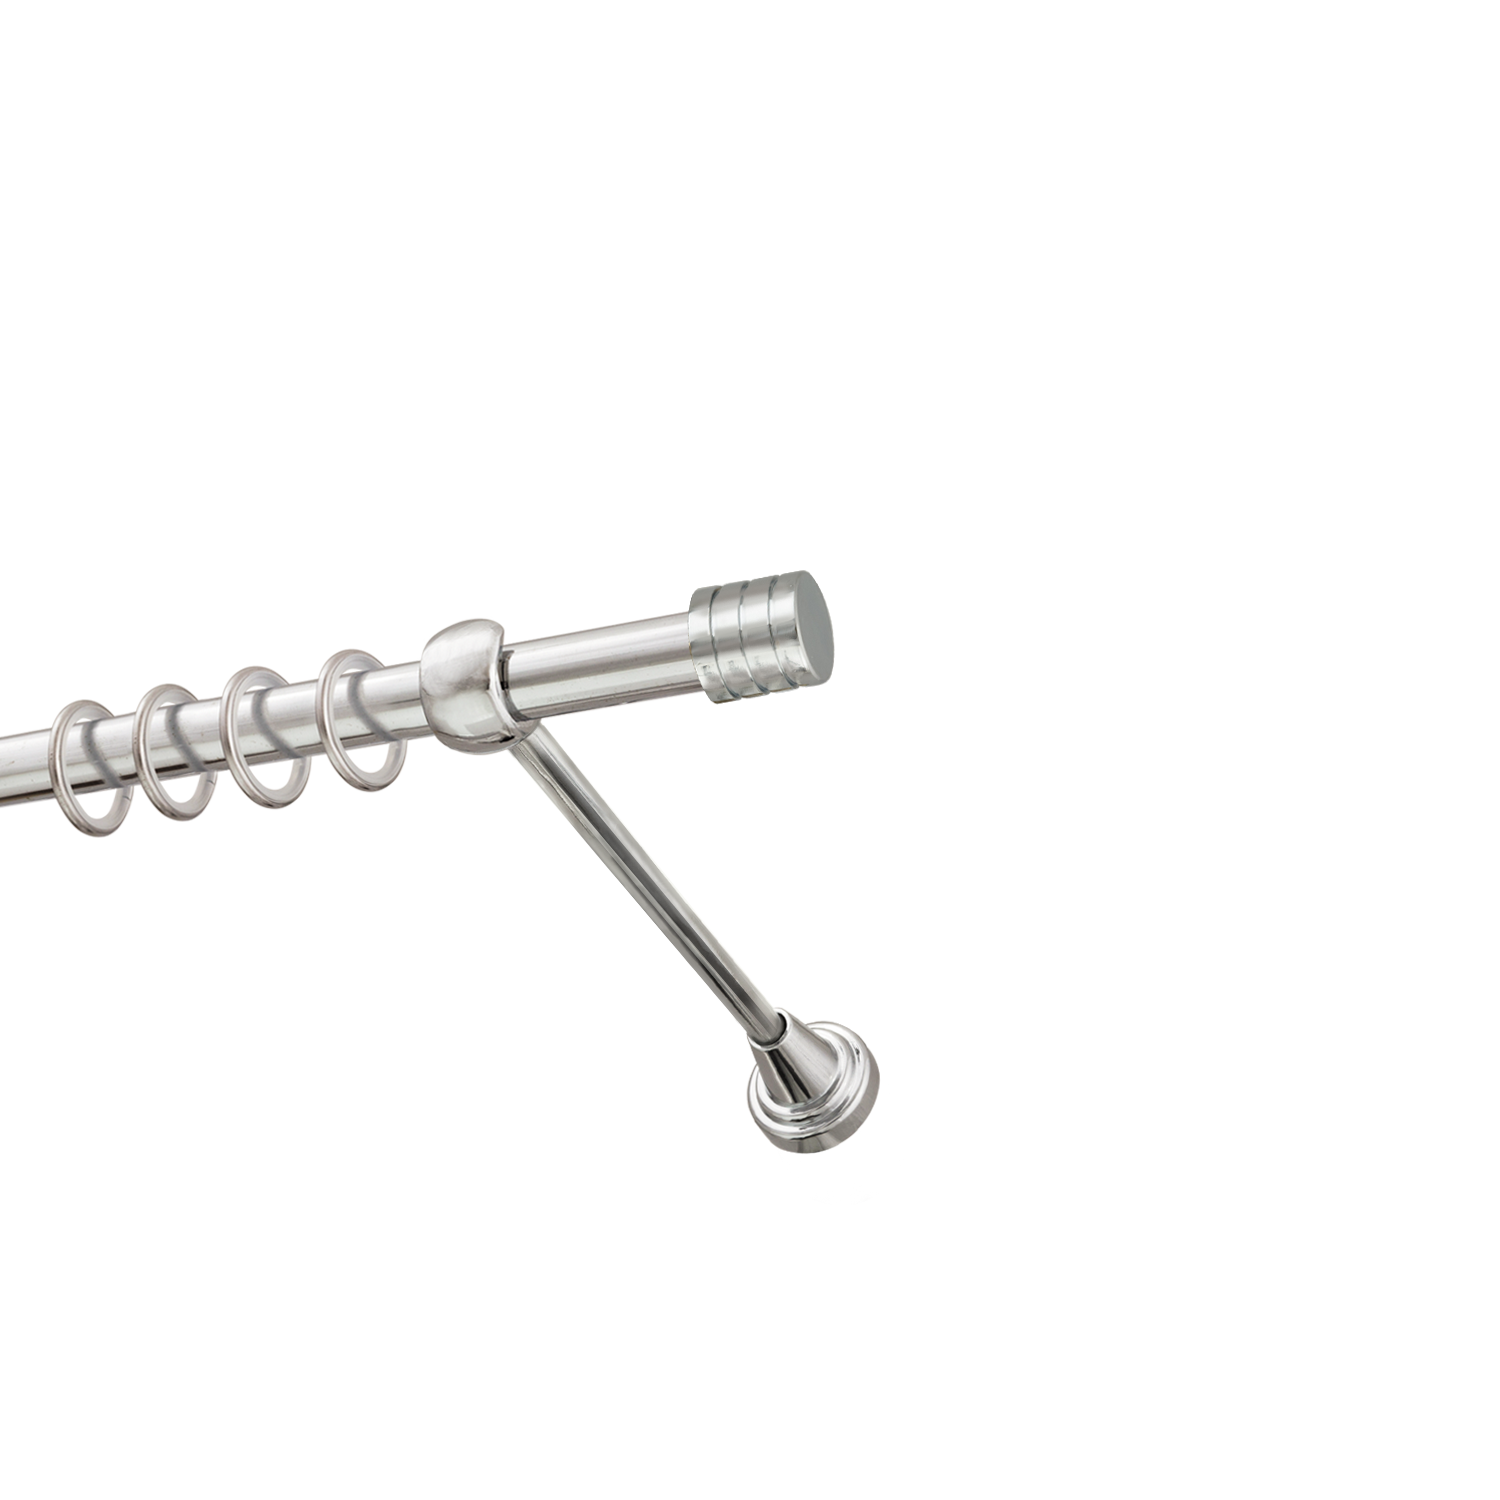 Металлический карниз для штор Подиум, однорядный 16 мм, серебро, гладкая штанга, длина 240 см - фото Wikidecor.ru